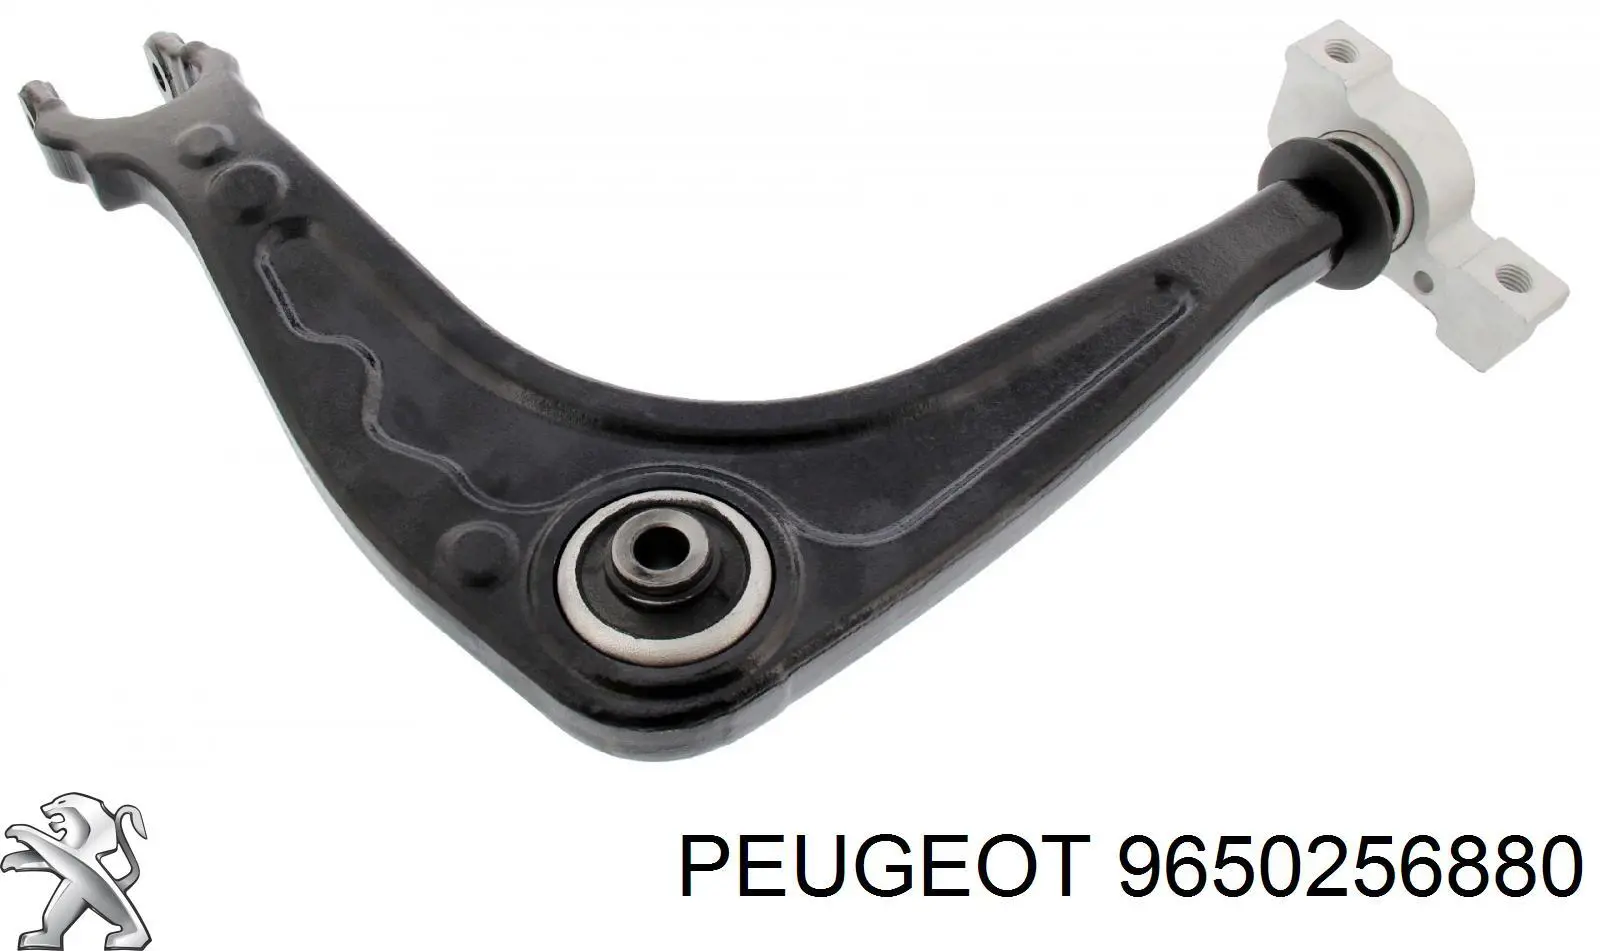 9650256880 Peugeot/Citroen barra oscilante, suspensión de ruedas delantera, inferior izquierda